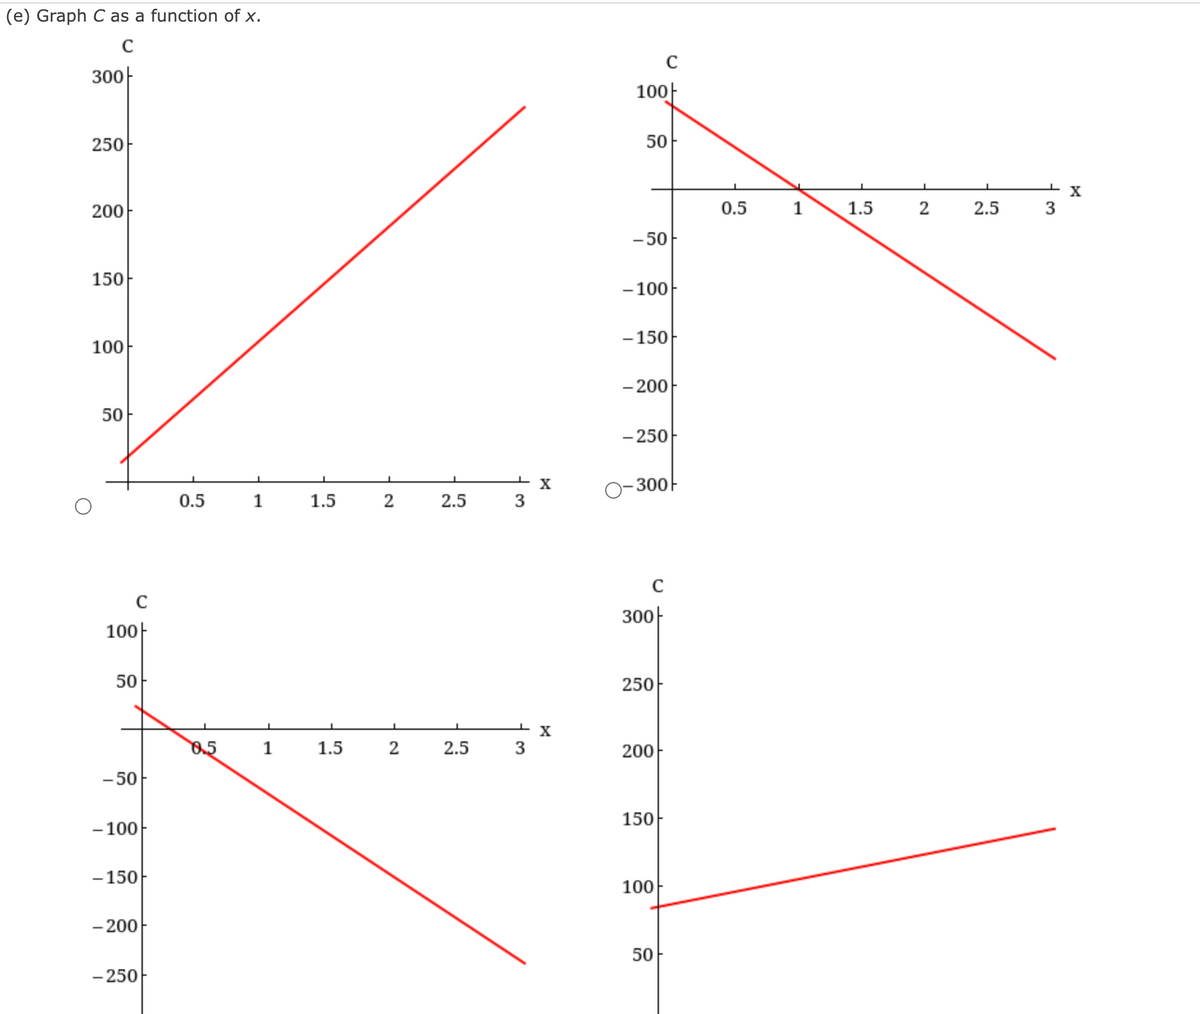 (e) Graph C as a function of x.
300
250
200
150
100
50
C
100
50
-50
-100+
-150
- 200
- 250
0.5
0.5
1
1
1.5
1.5
2
2
2.5
2.5
3
t
3
X
X
100
50
-50
-100
-150
- 200
- 250
O-300
C
300
250
200
150
100
50
0.5
1
1.5
2
2.5
3
X